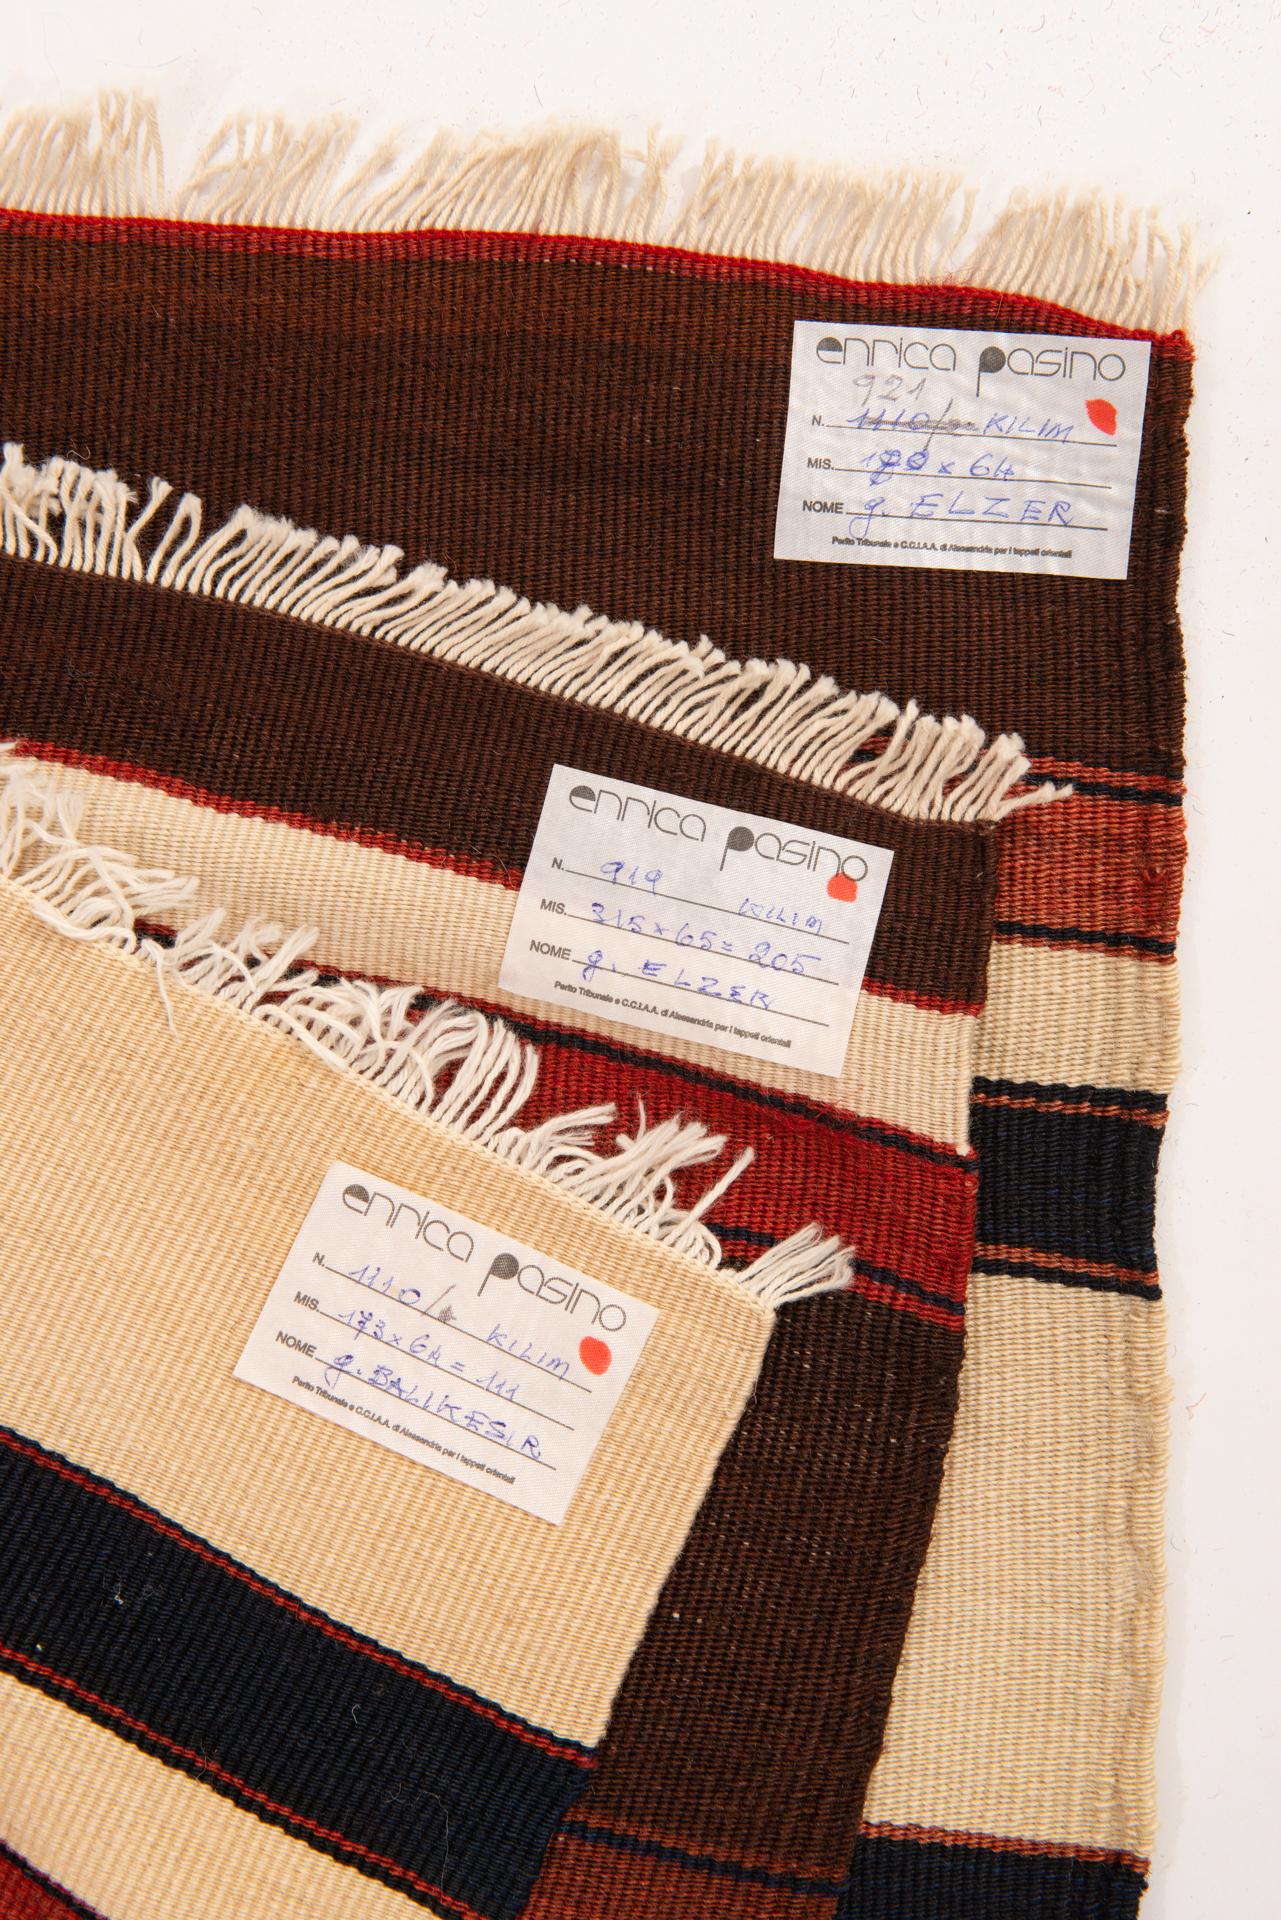  Lot de trois bandes de kilim oriental vintage avec de belles couleurs : ivoire, noir, rouge et marron et des tailles différentes.
 Parfait dans une chambre à coucher.
Elles peuvent être réunies et obtenir un  kilim de cm. 193 x 173 et quelques